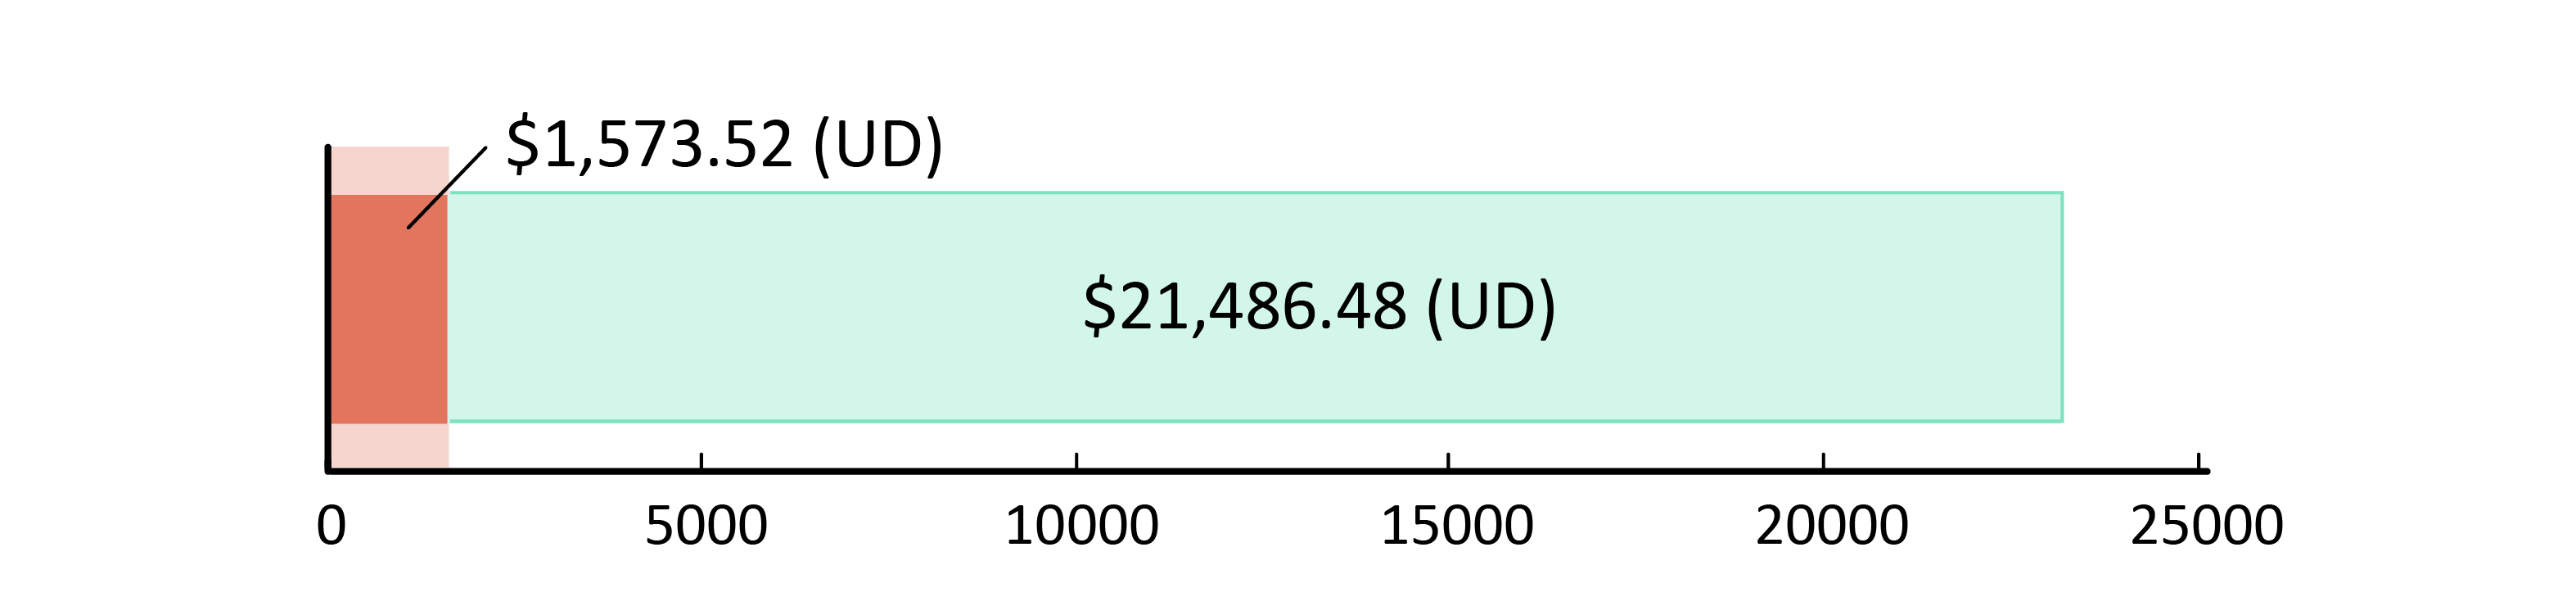 $1,573.52 (UD)  wedi’i wario; $21,486.48 (UD) ar ôl